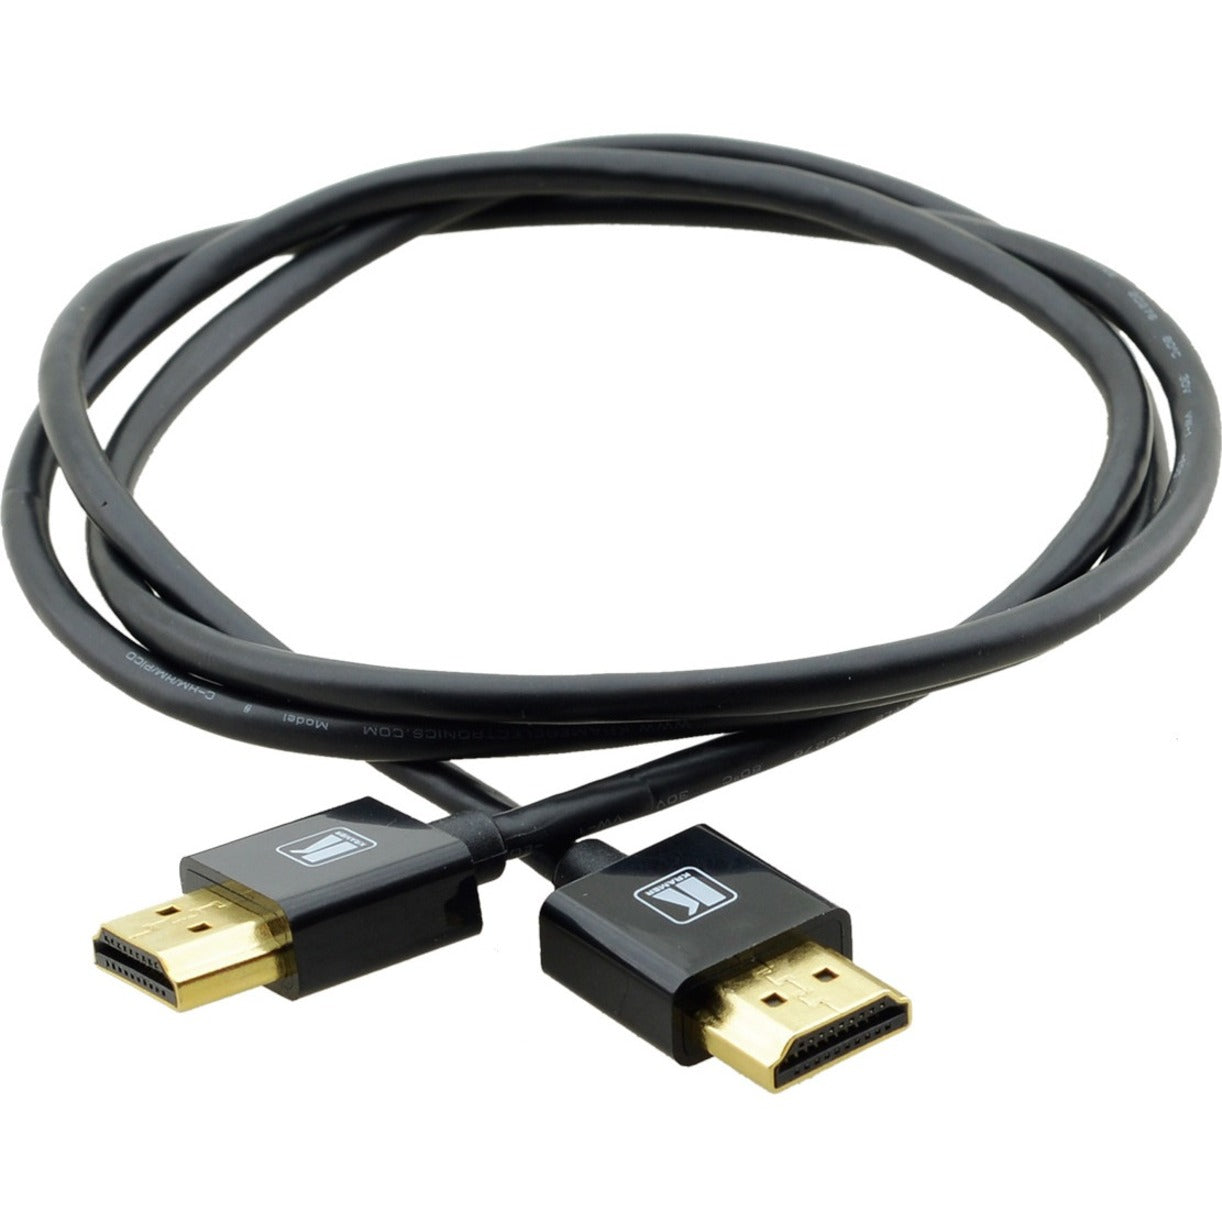 كرامر C-HM/HM/PICO/BK-10 كابل HDMI فائق الرقة عالي السرعة مرن مع إيثرنت، 10 قدم، أسود.